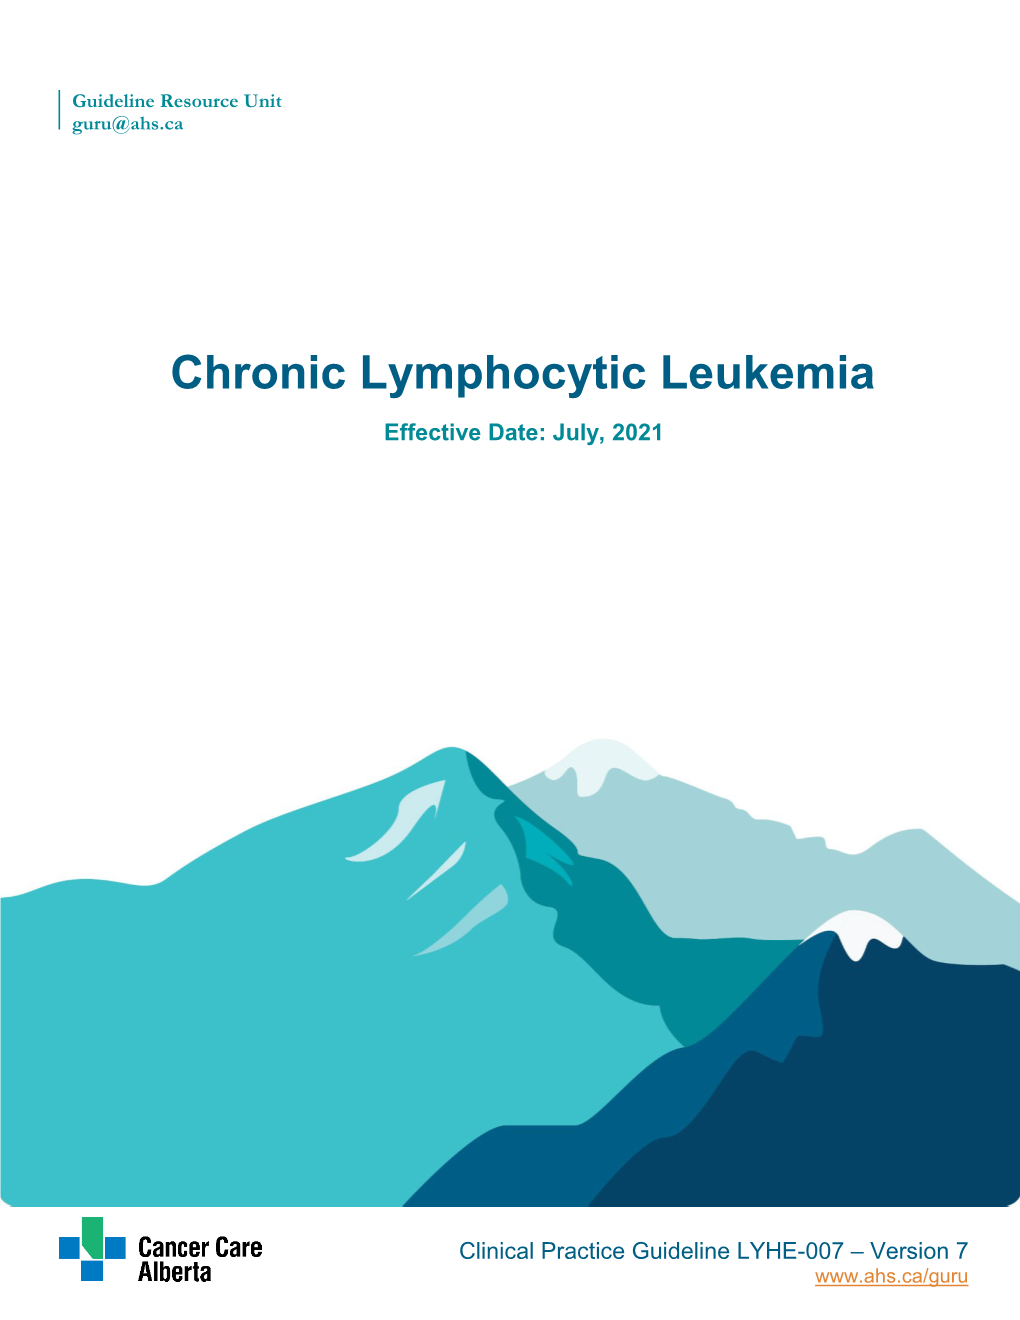 Chronic Lymphocytic Leukemia Effective Date: July, 2021